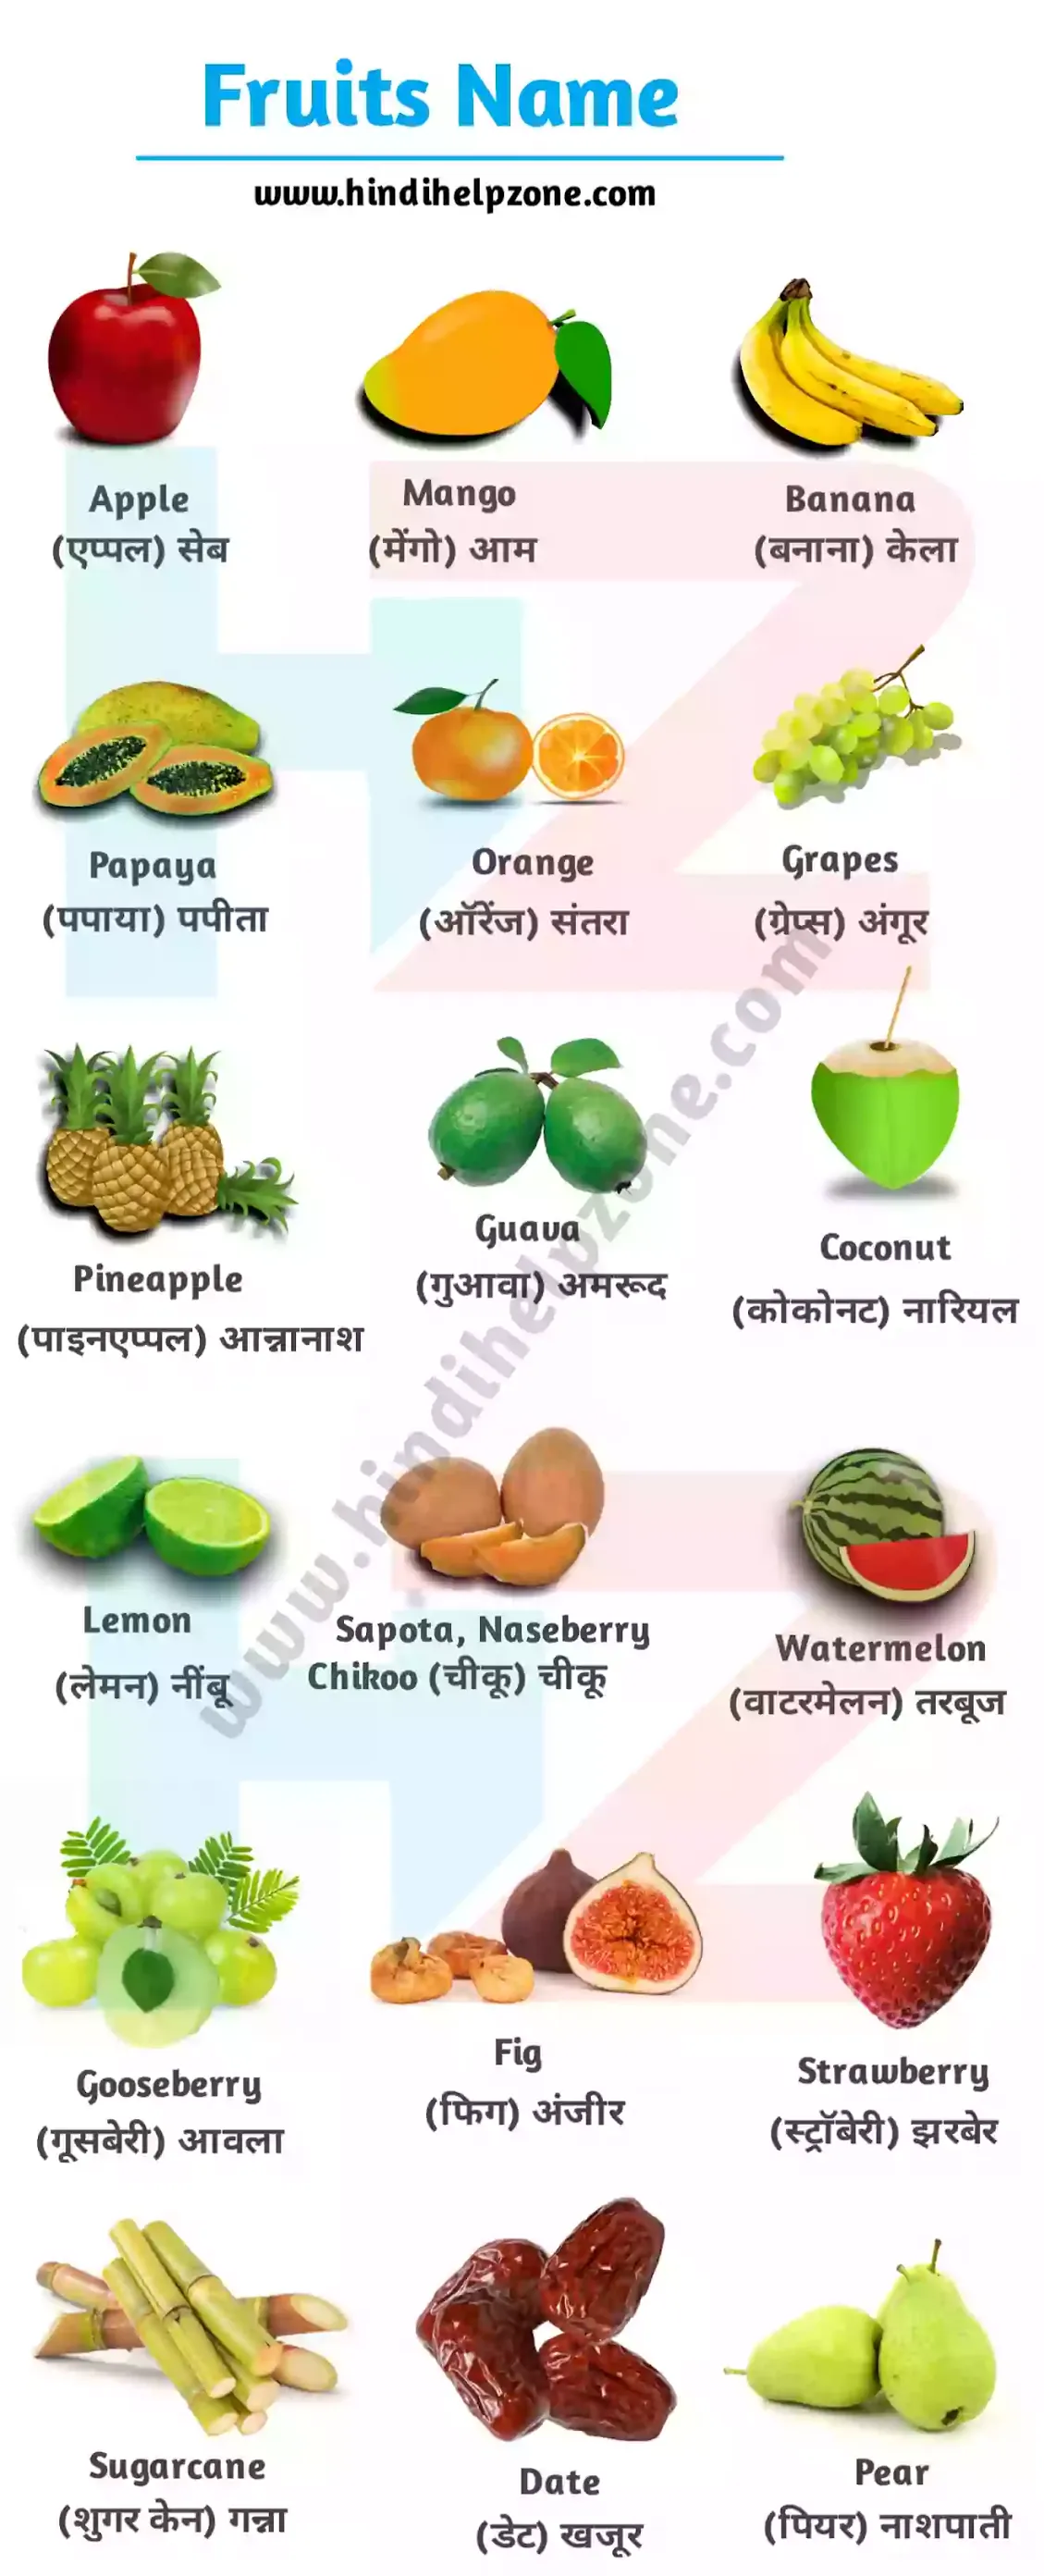 All Fruits Name List In Hindi And English Pdf À¤«à¤² À¤ À¤¨ À¤® Hindihelpzone